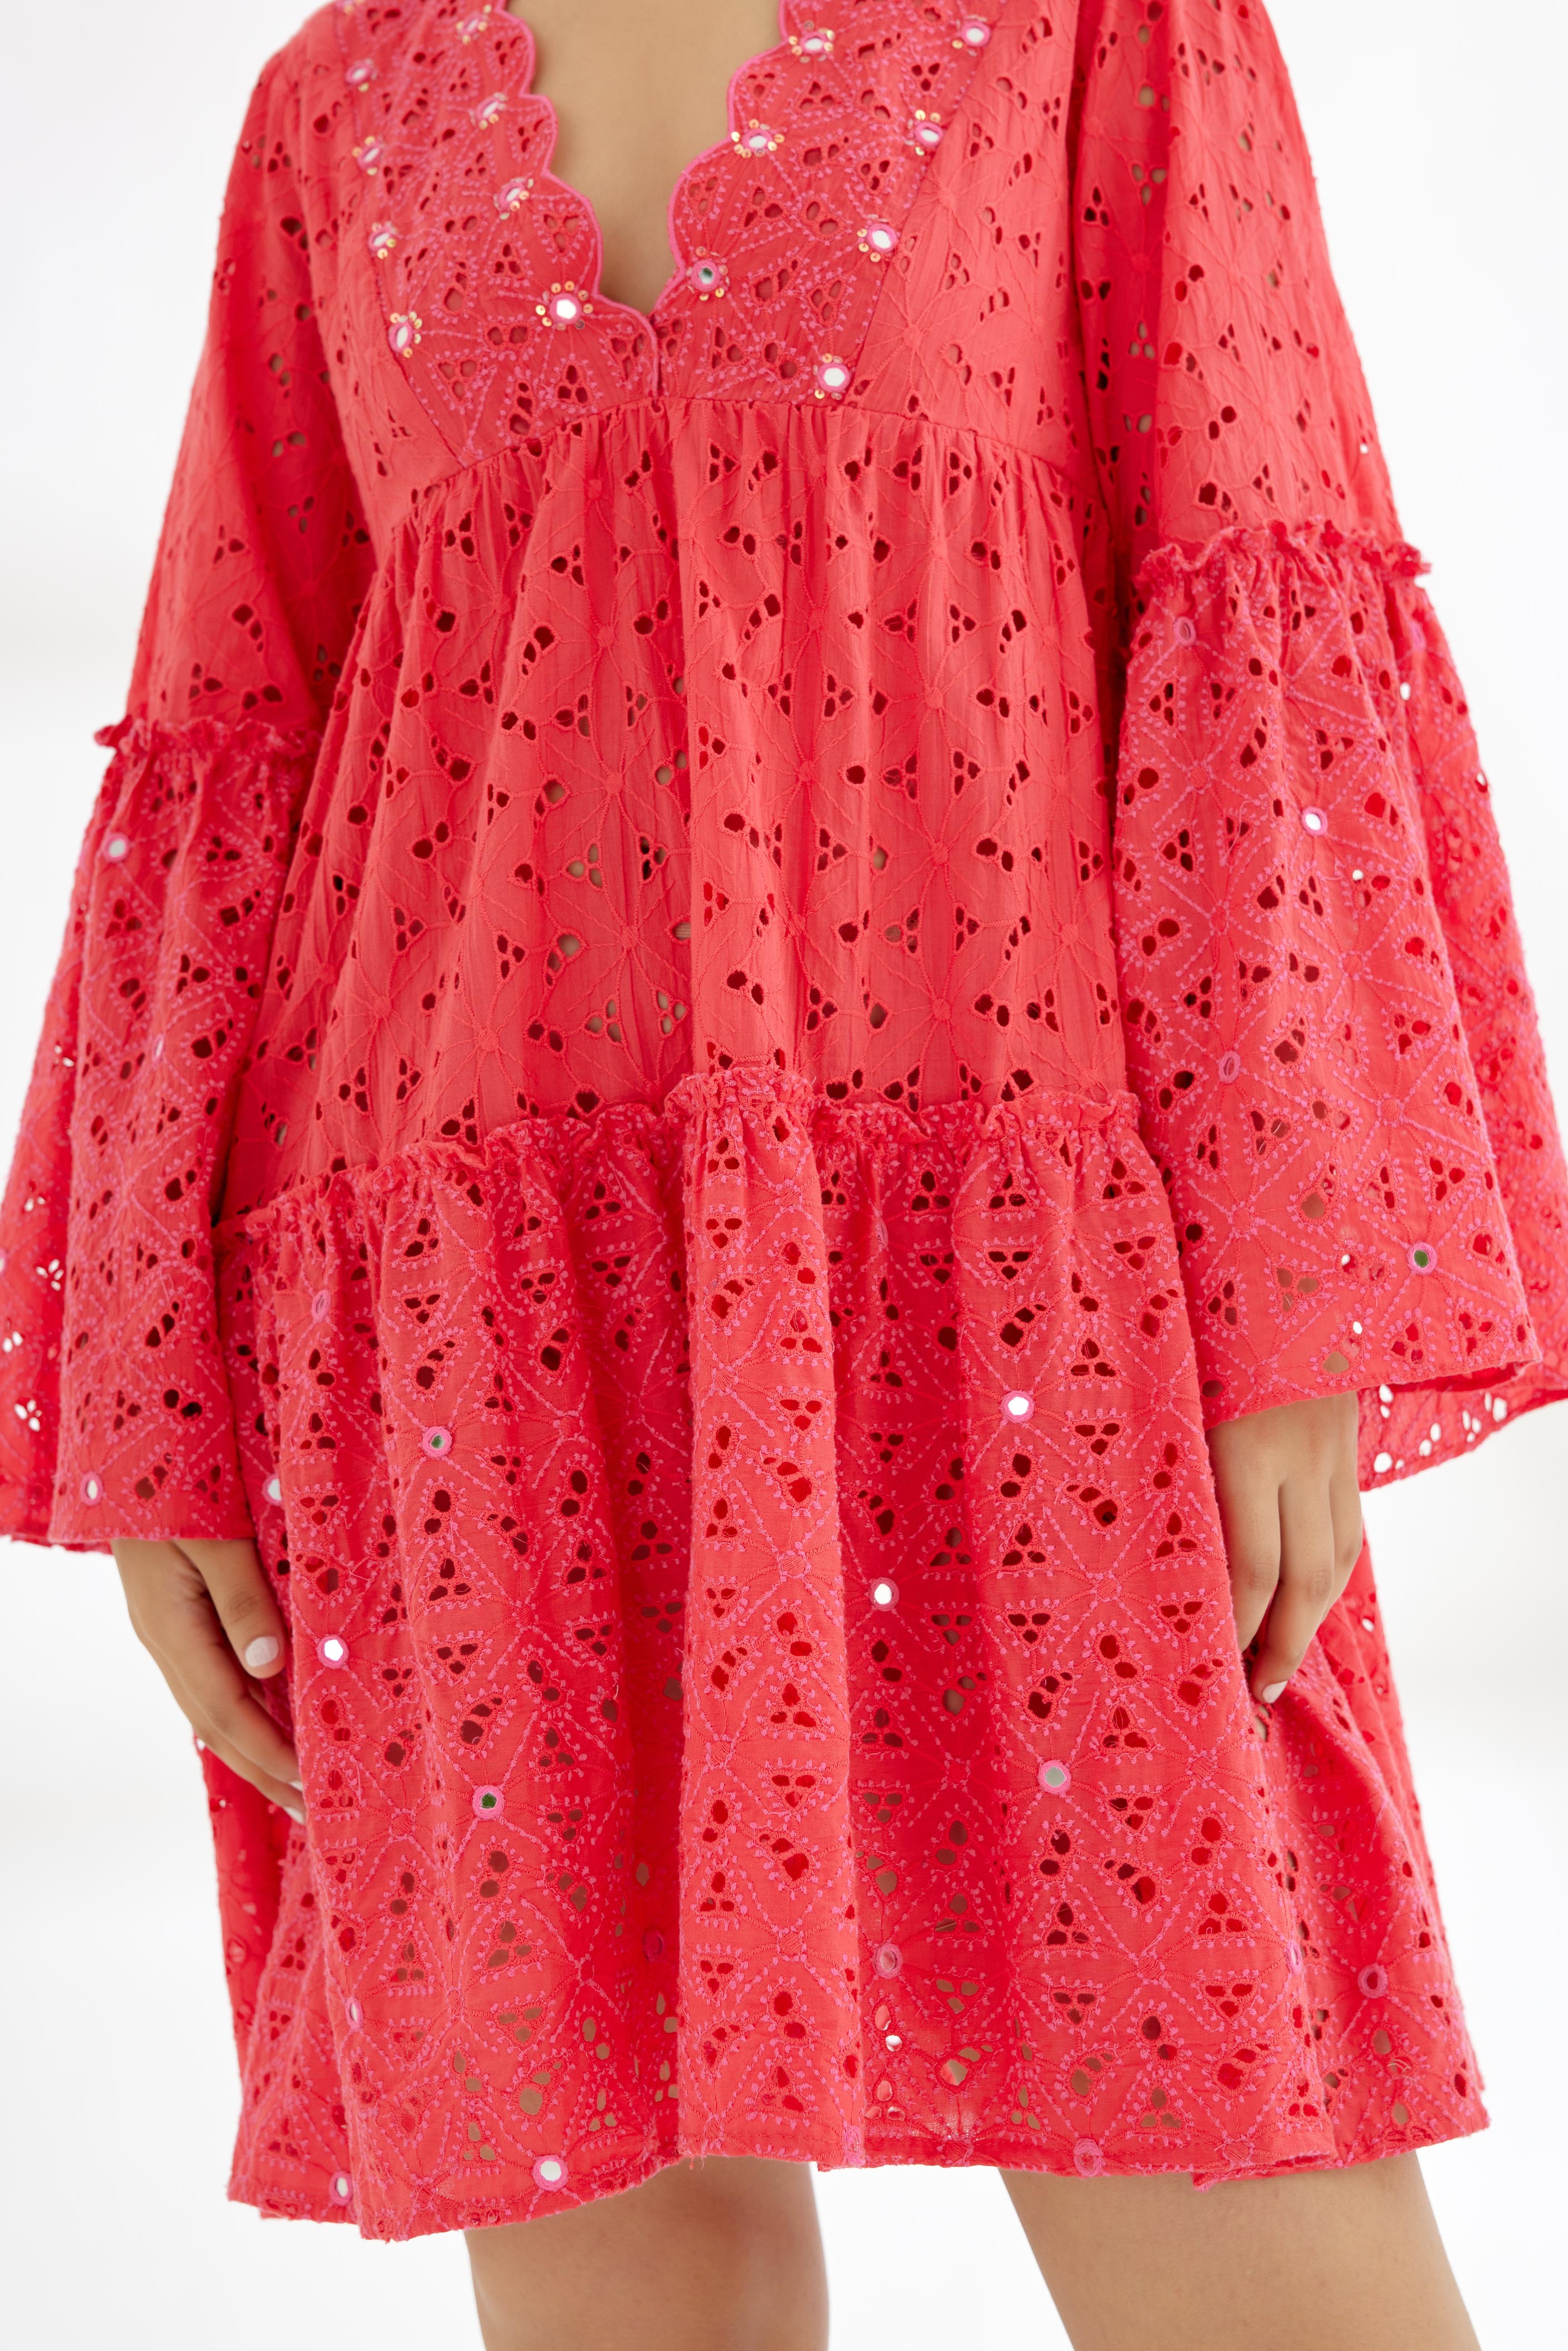 Fuchsia Pink Hand Embroidered Mirror Work Short Dress